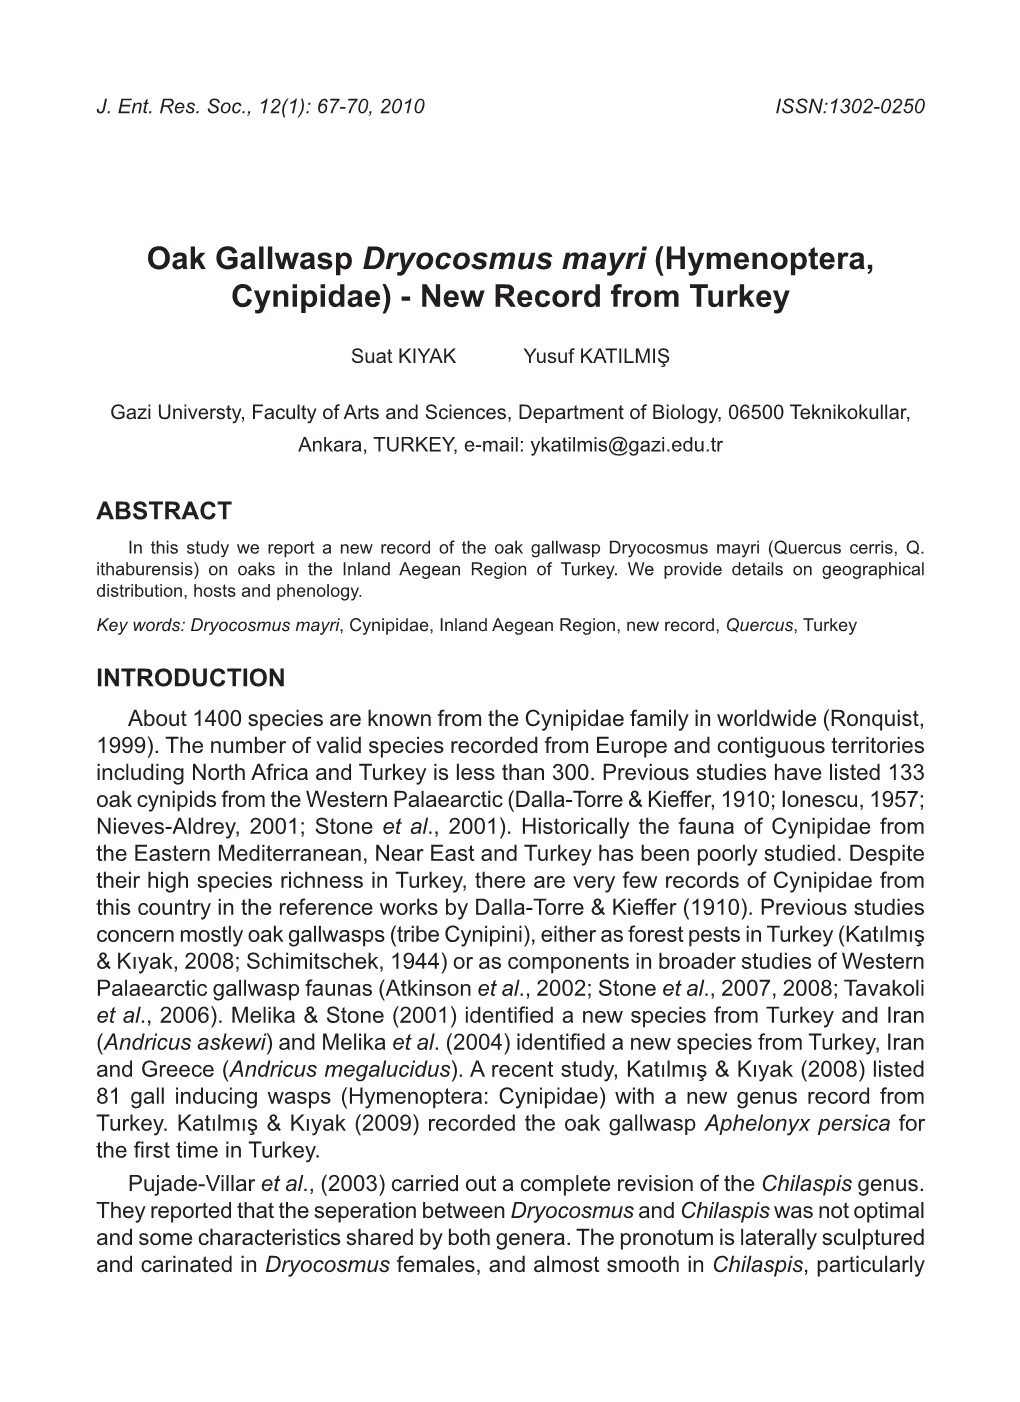 Oak Gallwasp Dryocosmus Mayri (Hymenoptera, Cynipidae) - New Record from Turkey